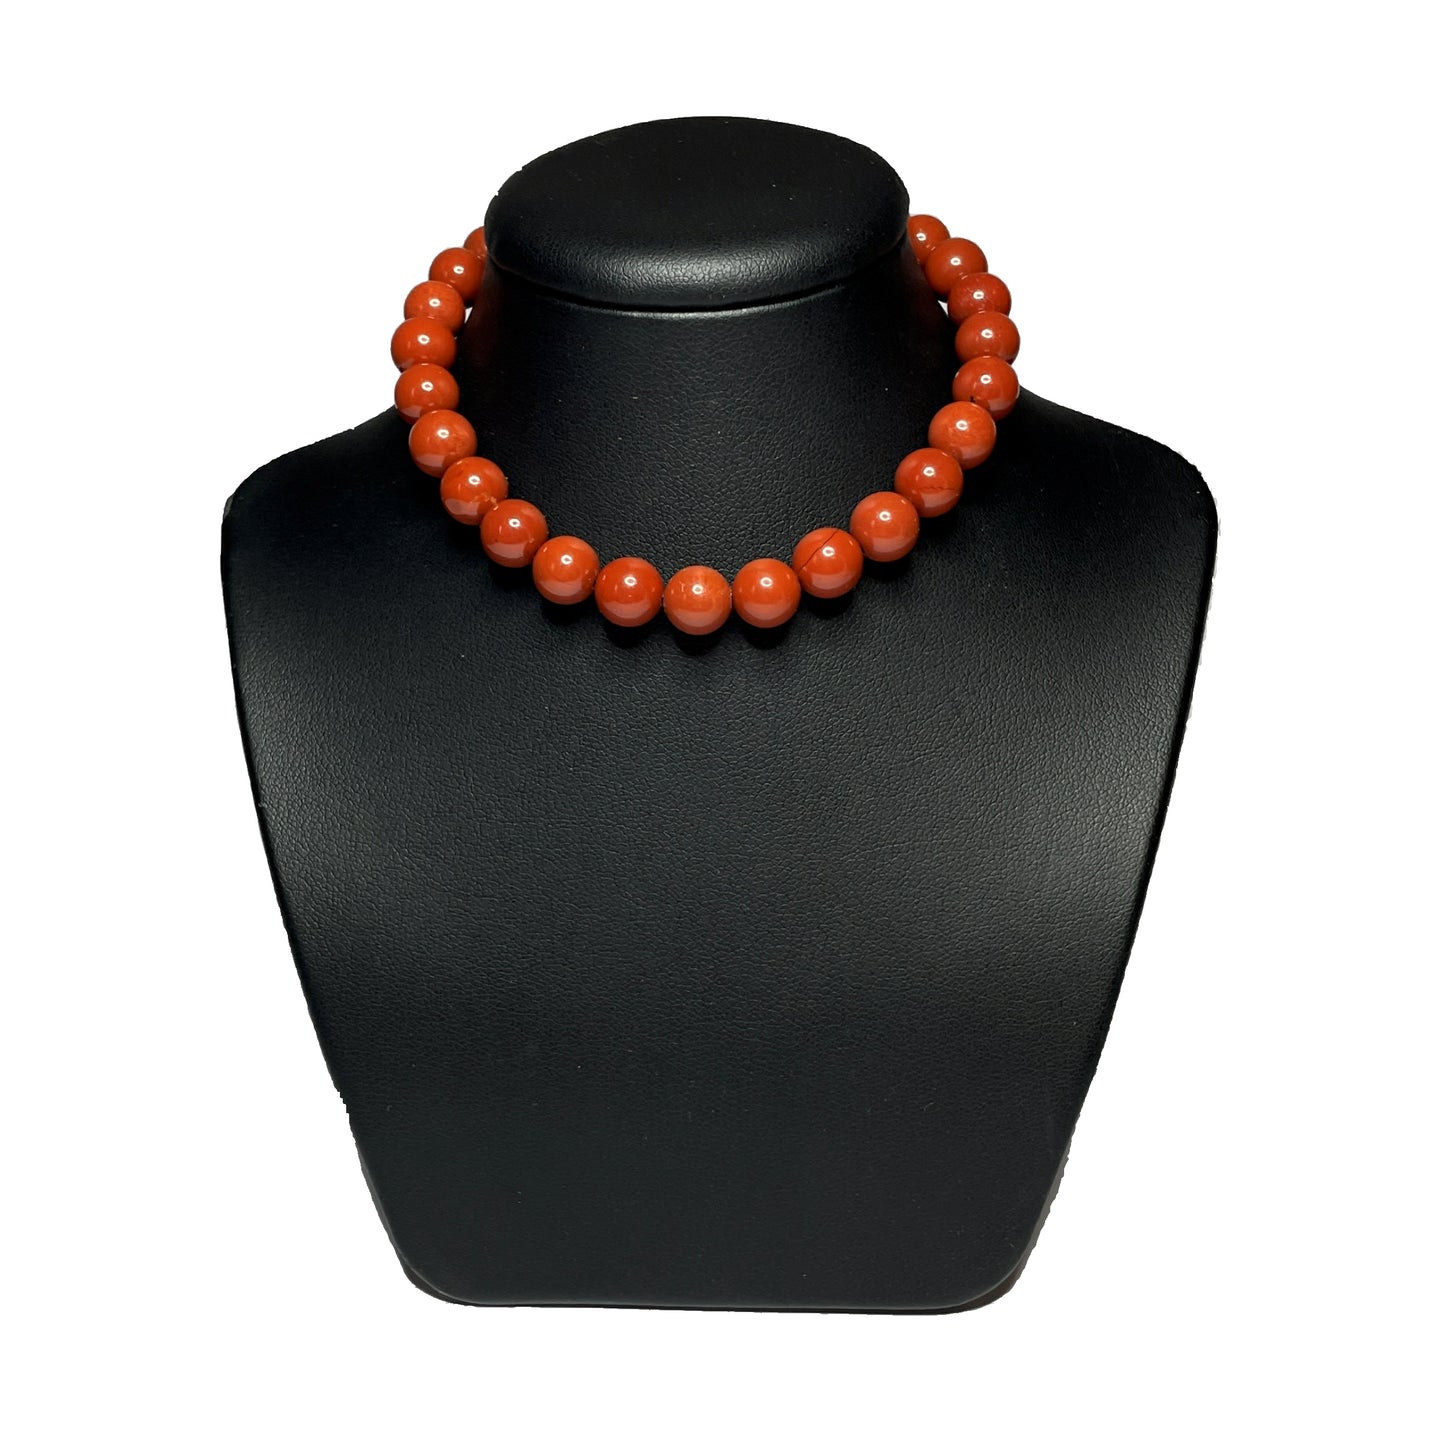 Red jasper gemstone necklace